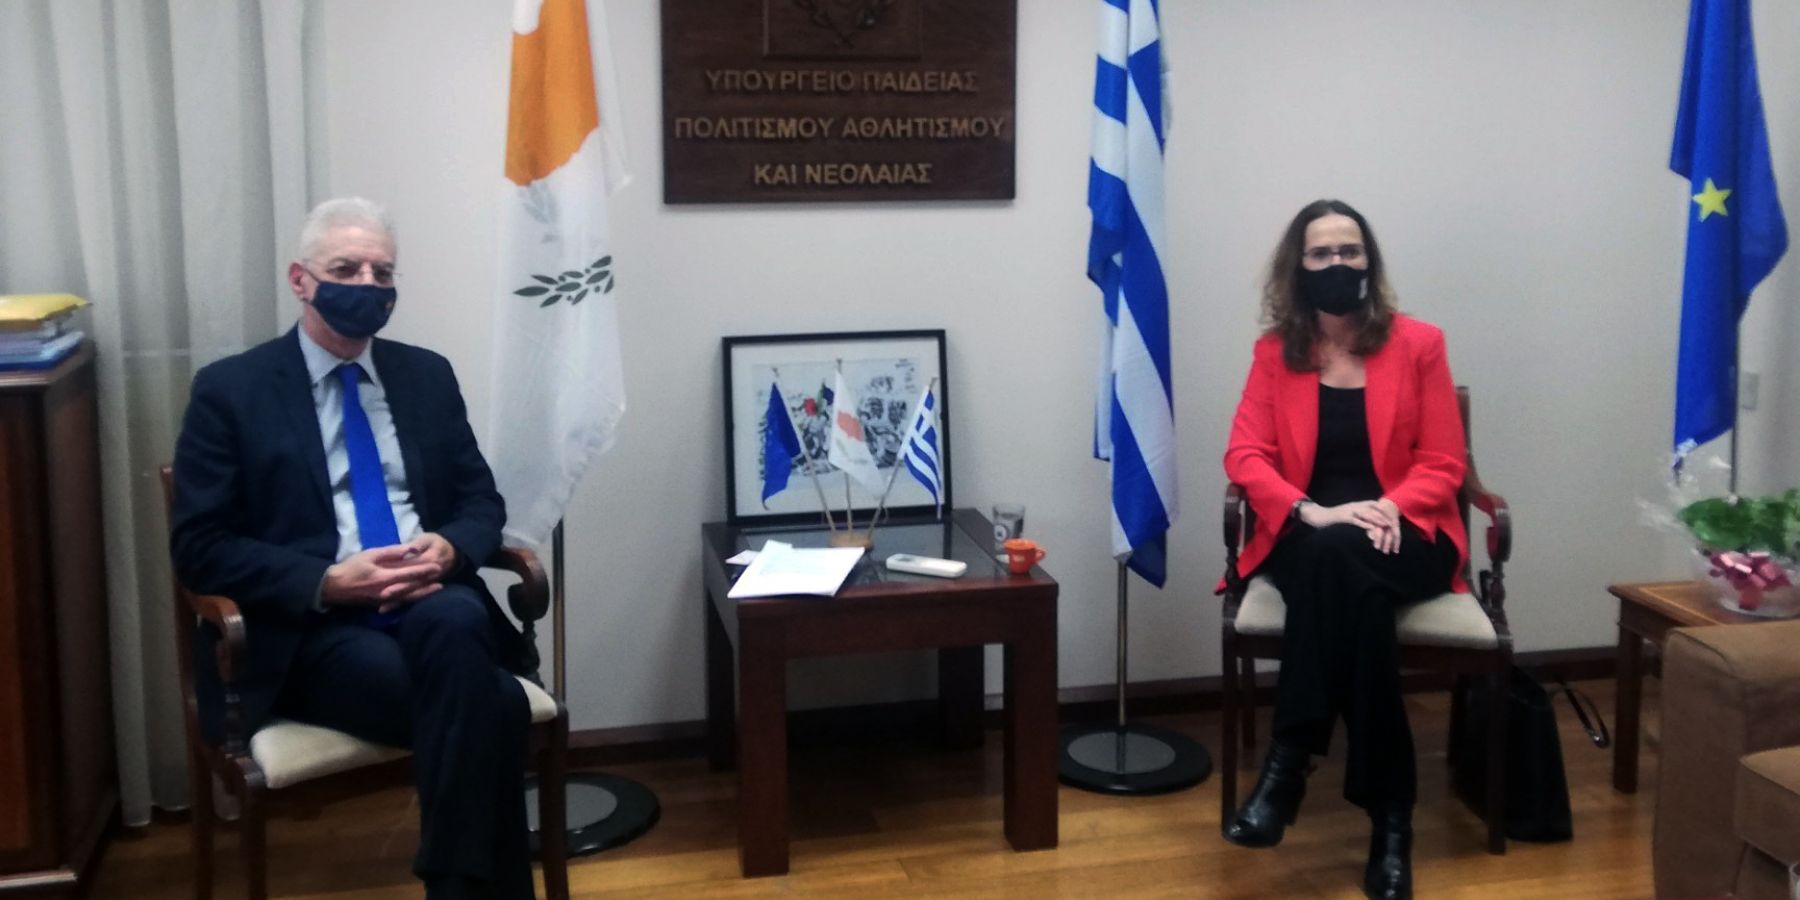  Συνάντηση Υπουργού Παιδείας με την πρέσβειρα της Γαλλίας στην Κύπρο